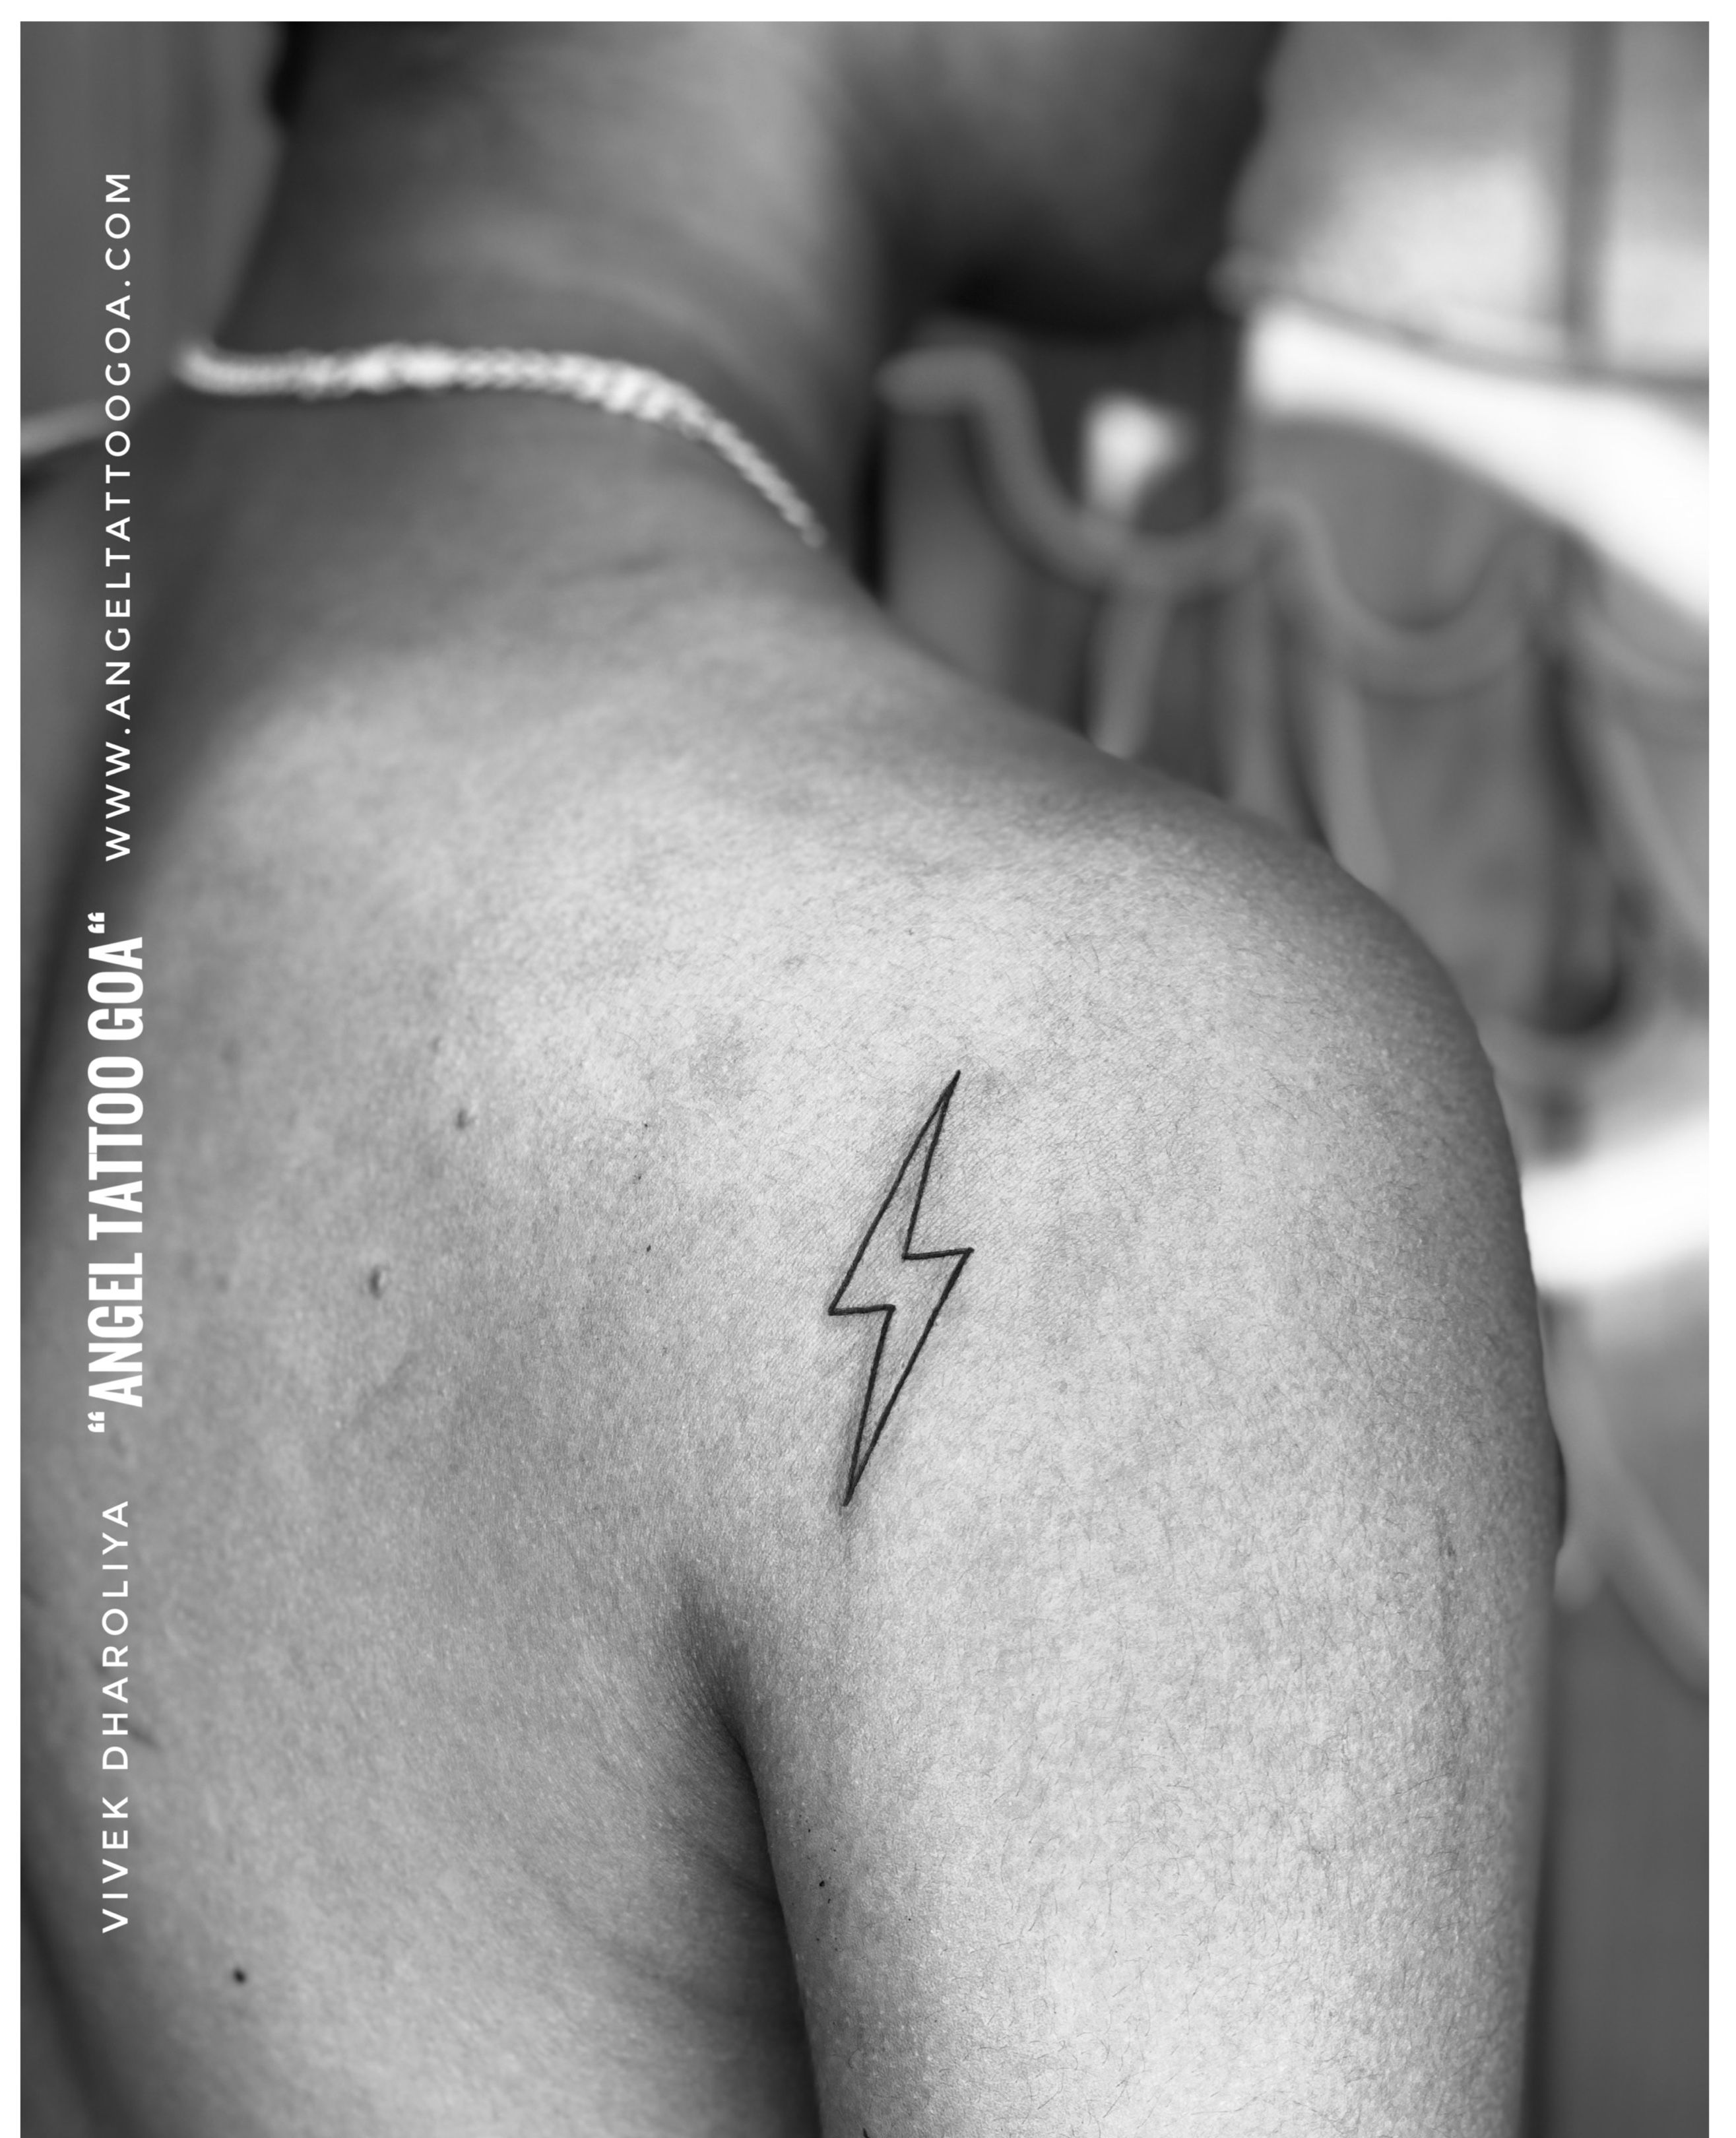 4 x 'Lightning Bolt' Temporary Tattoos (TO00042217) | eBay